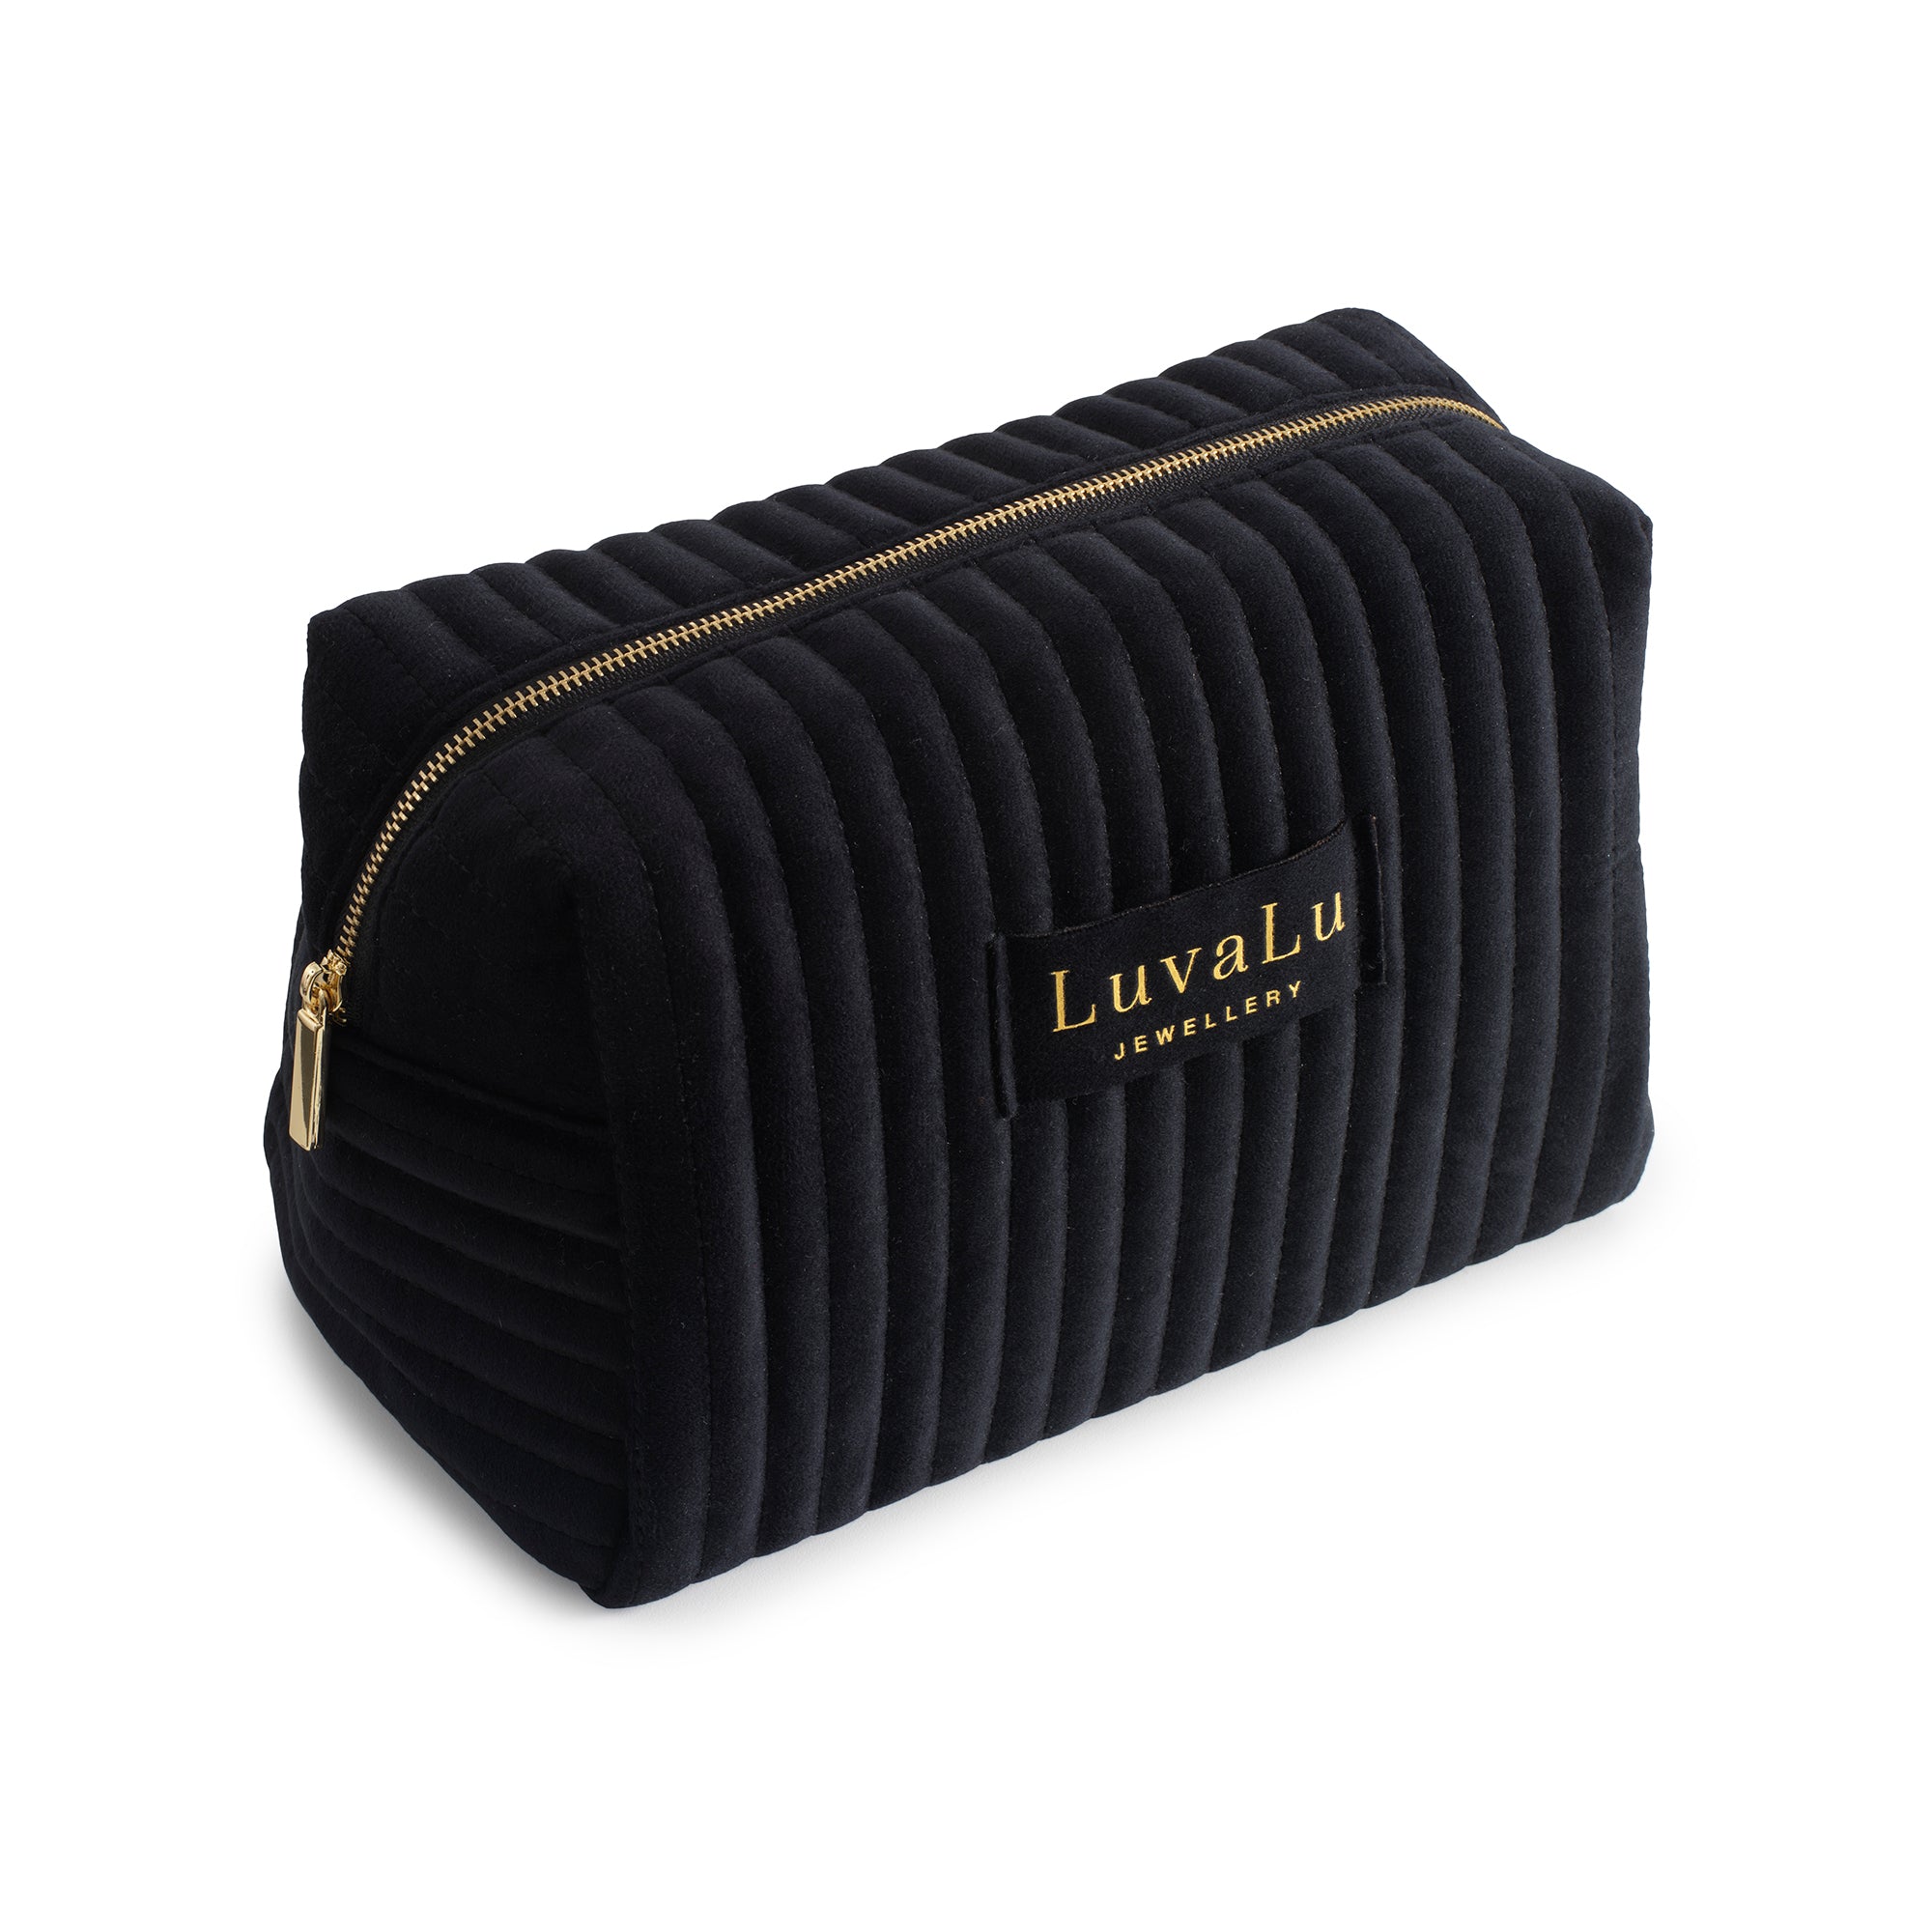 LuvaLu Jewellery - Big Black makeup bag